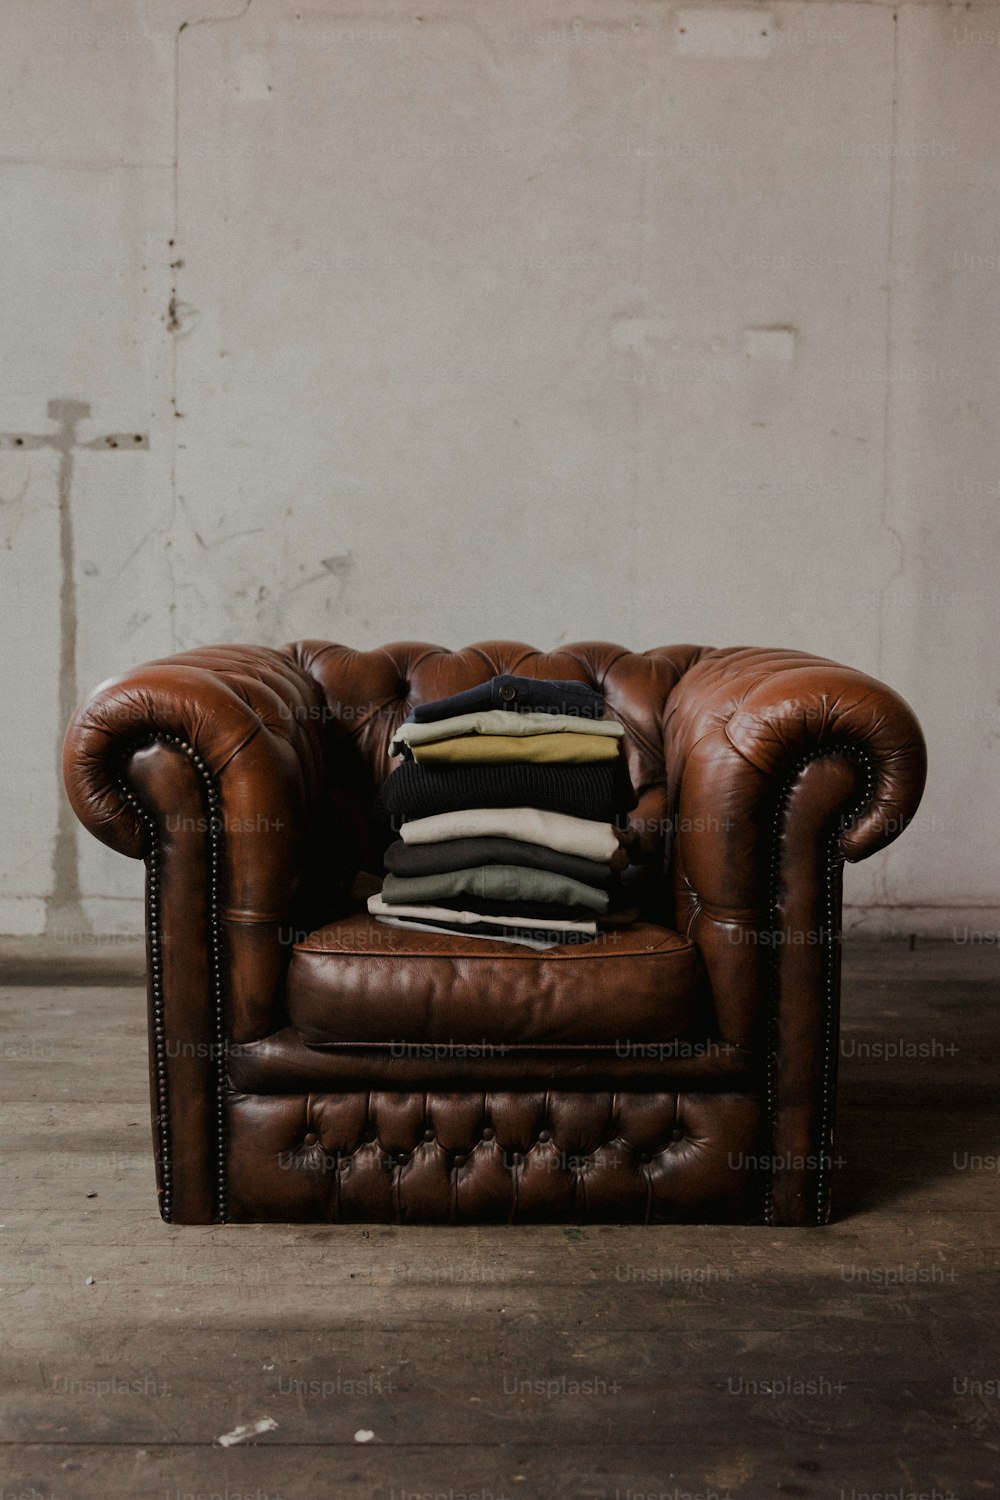 une chaise en cuir marron avec une pile d’oreillers sur le dessus